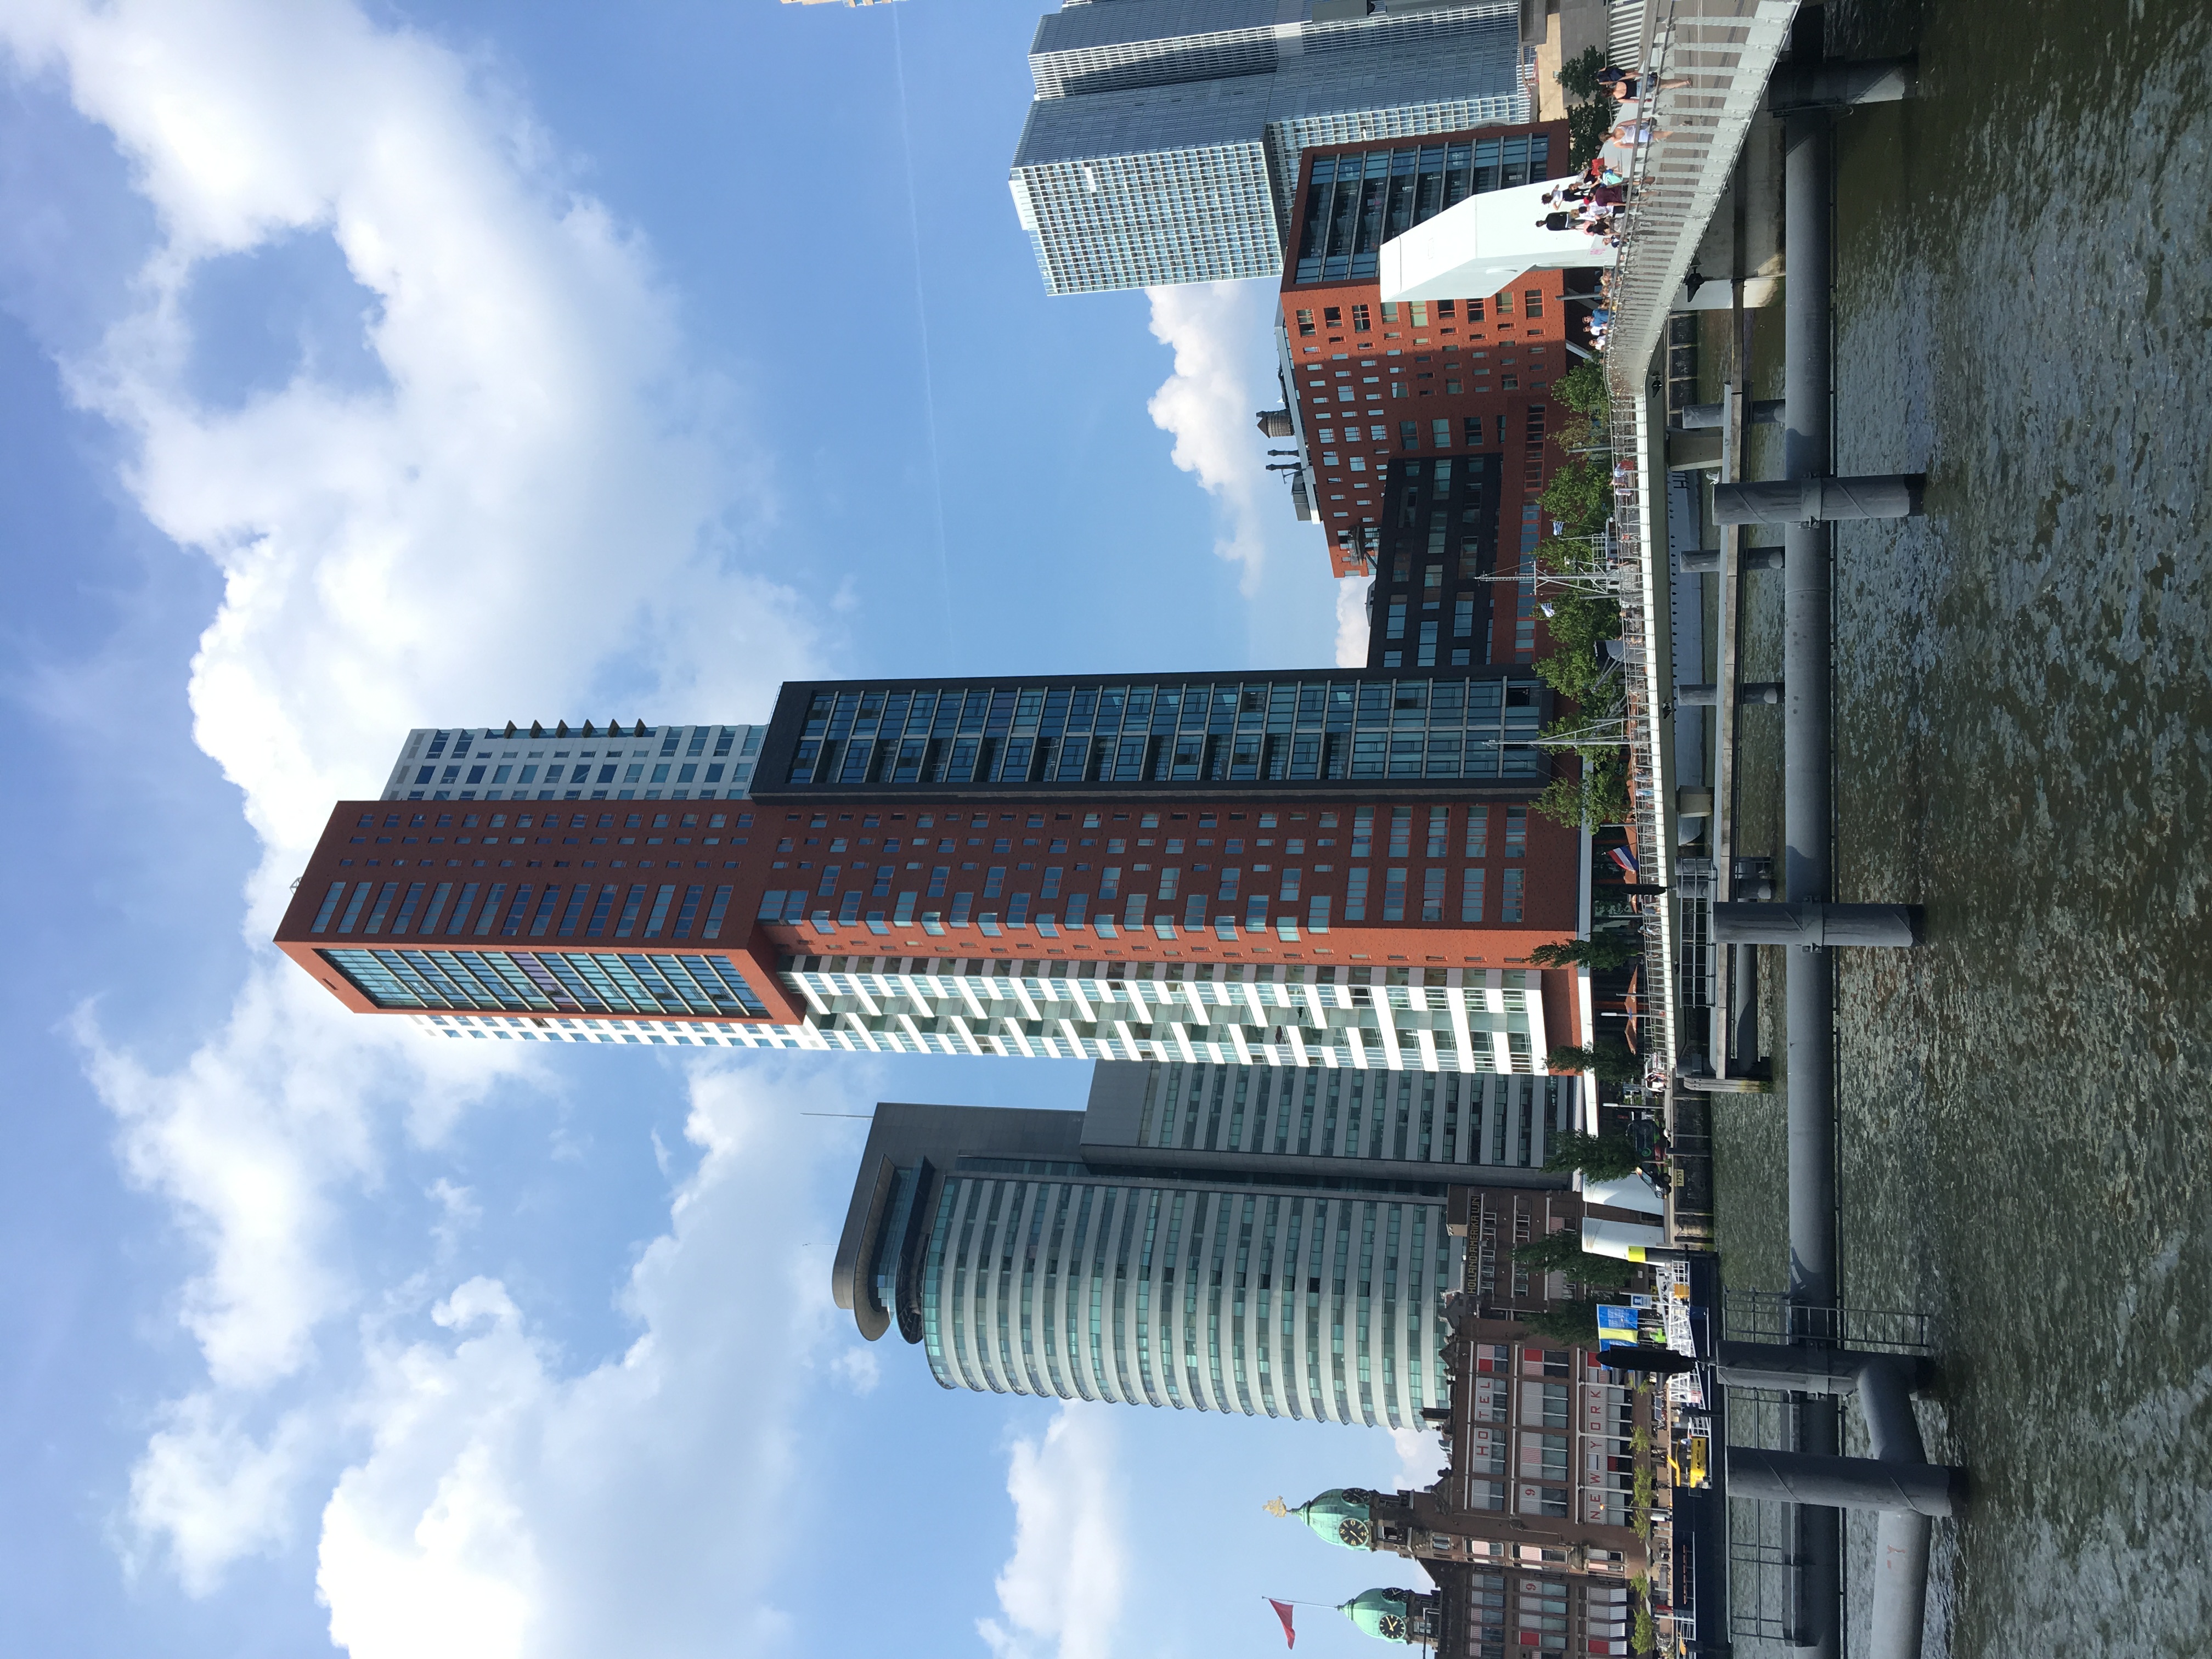 Architecture in Rotterdam